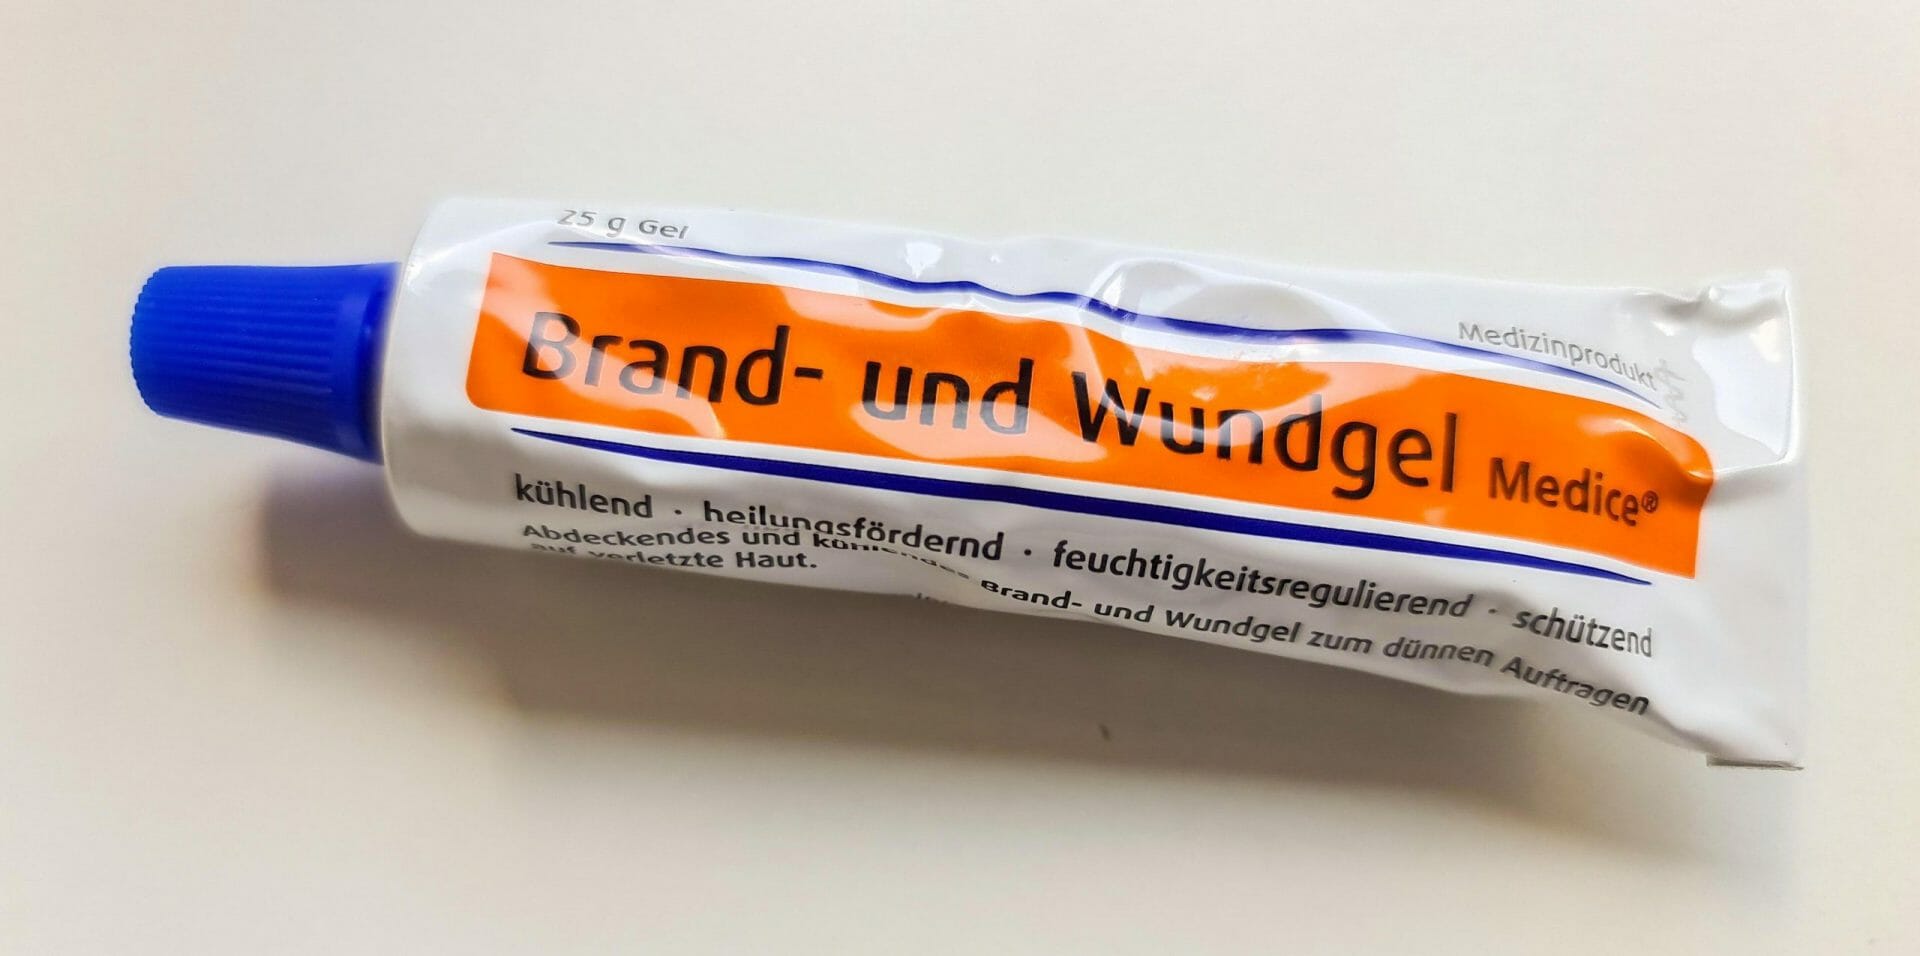 Brand- & Wundgel